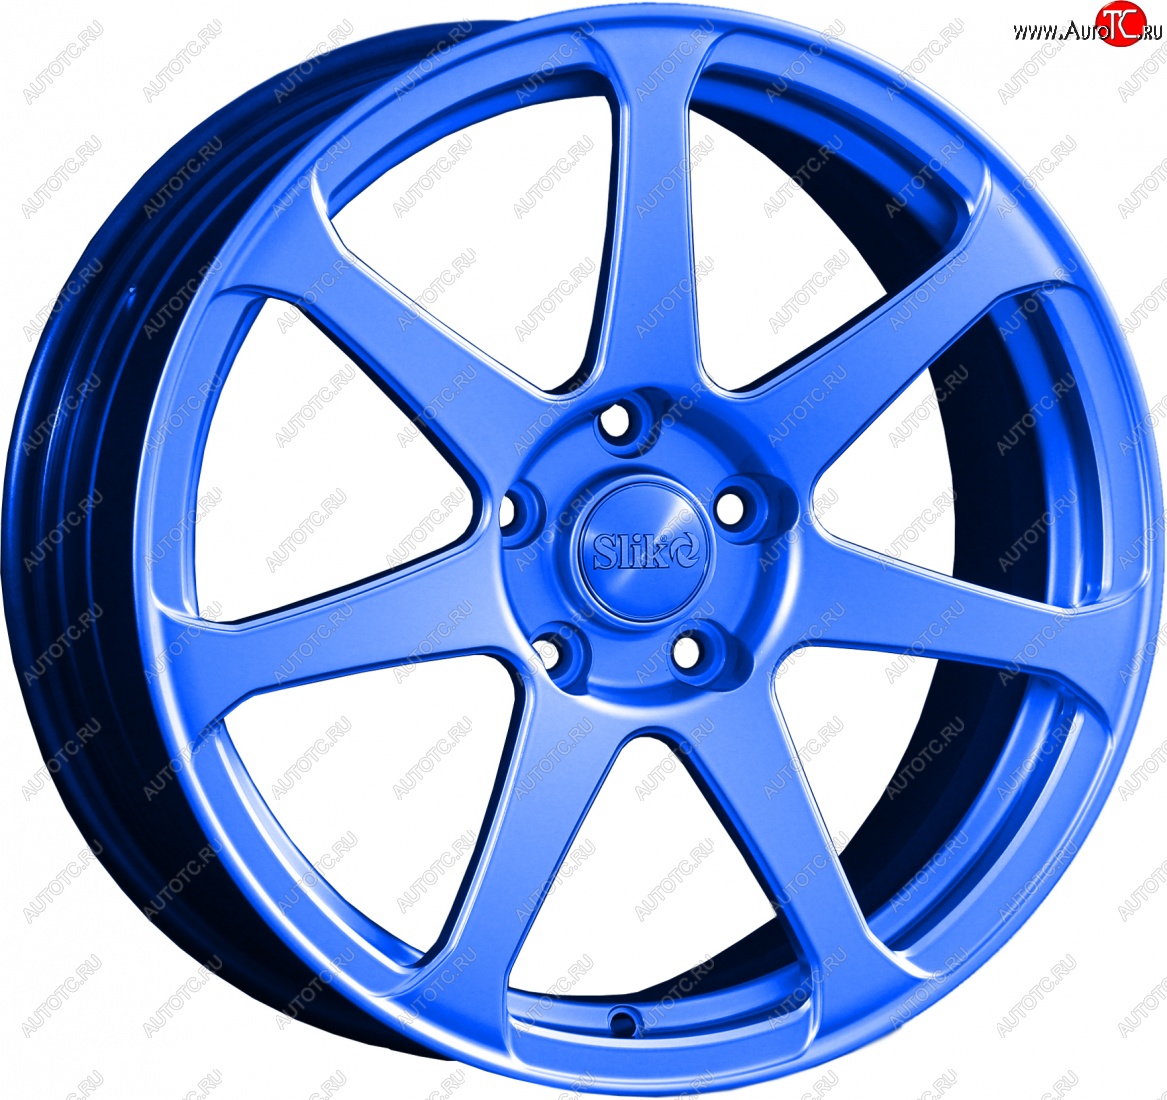 14 499 р. Кованый диск Slik classik R17x7.5 Синий (BLUE) 7.5x17 Chevrolet Lanos T100 седан (2002-2017) 4x100.0xDIA56.6xET49.0 (Цвет: BLUE)